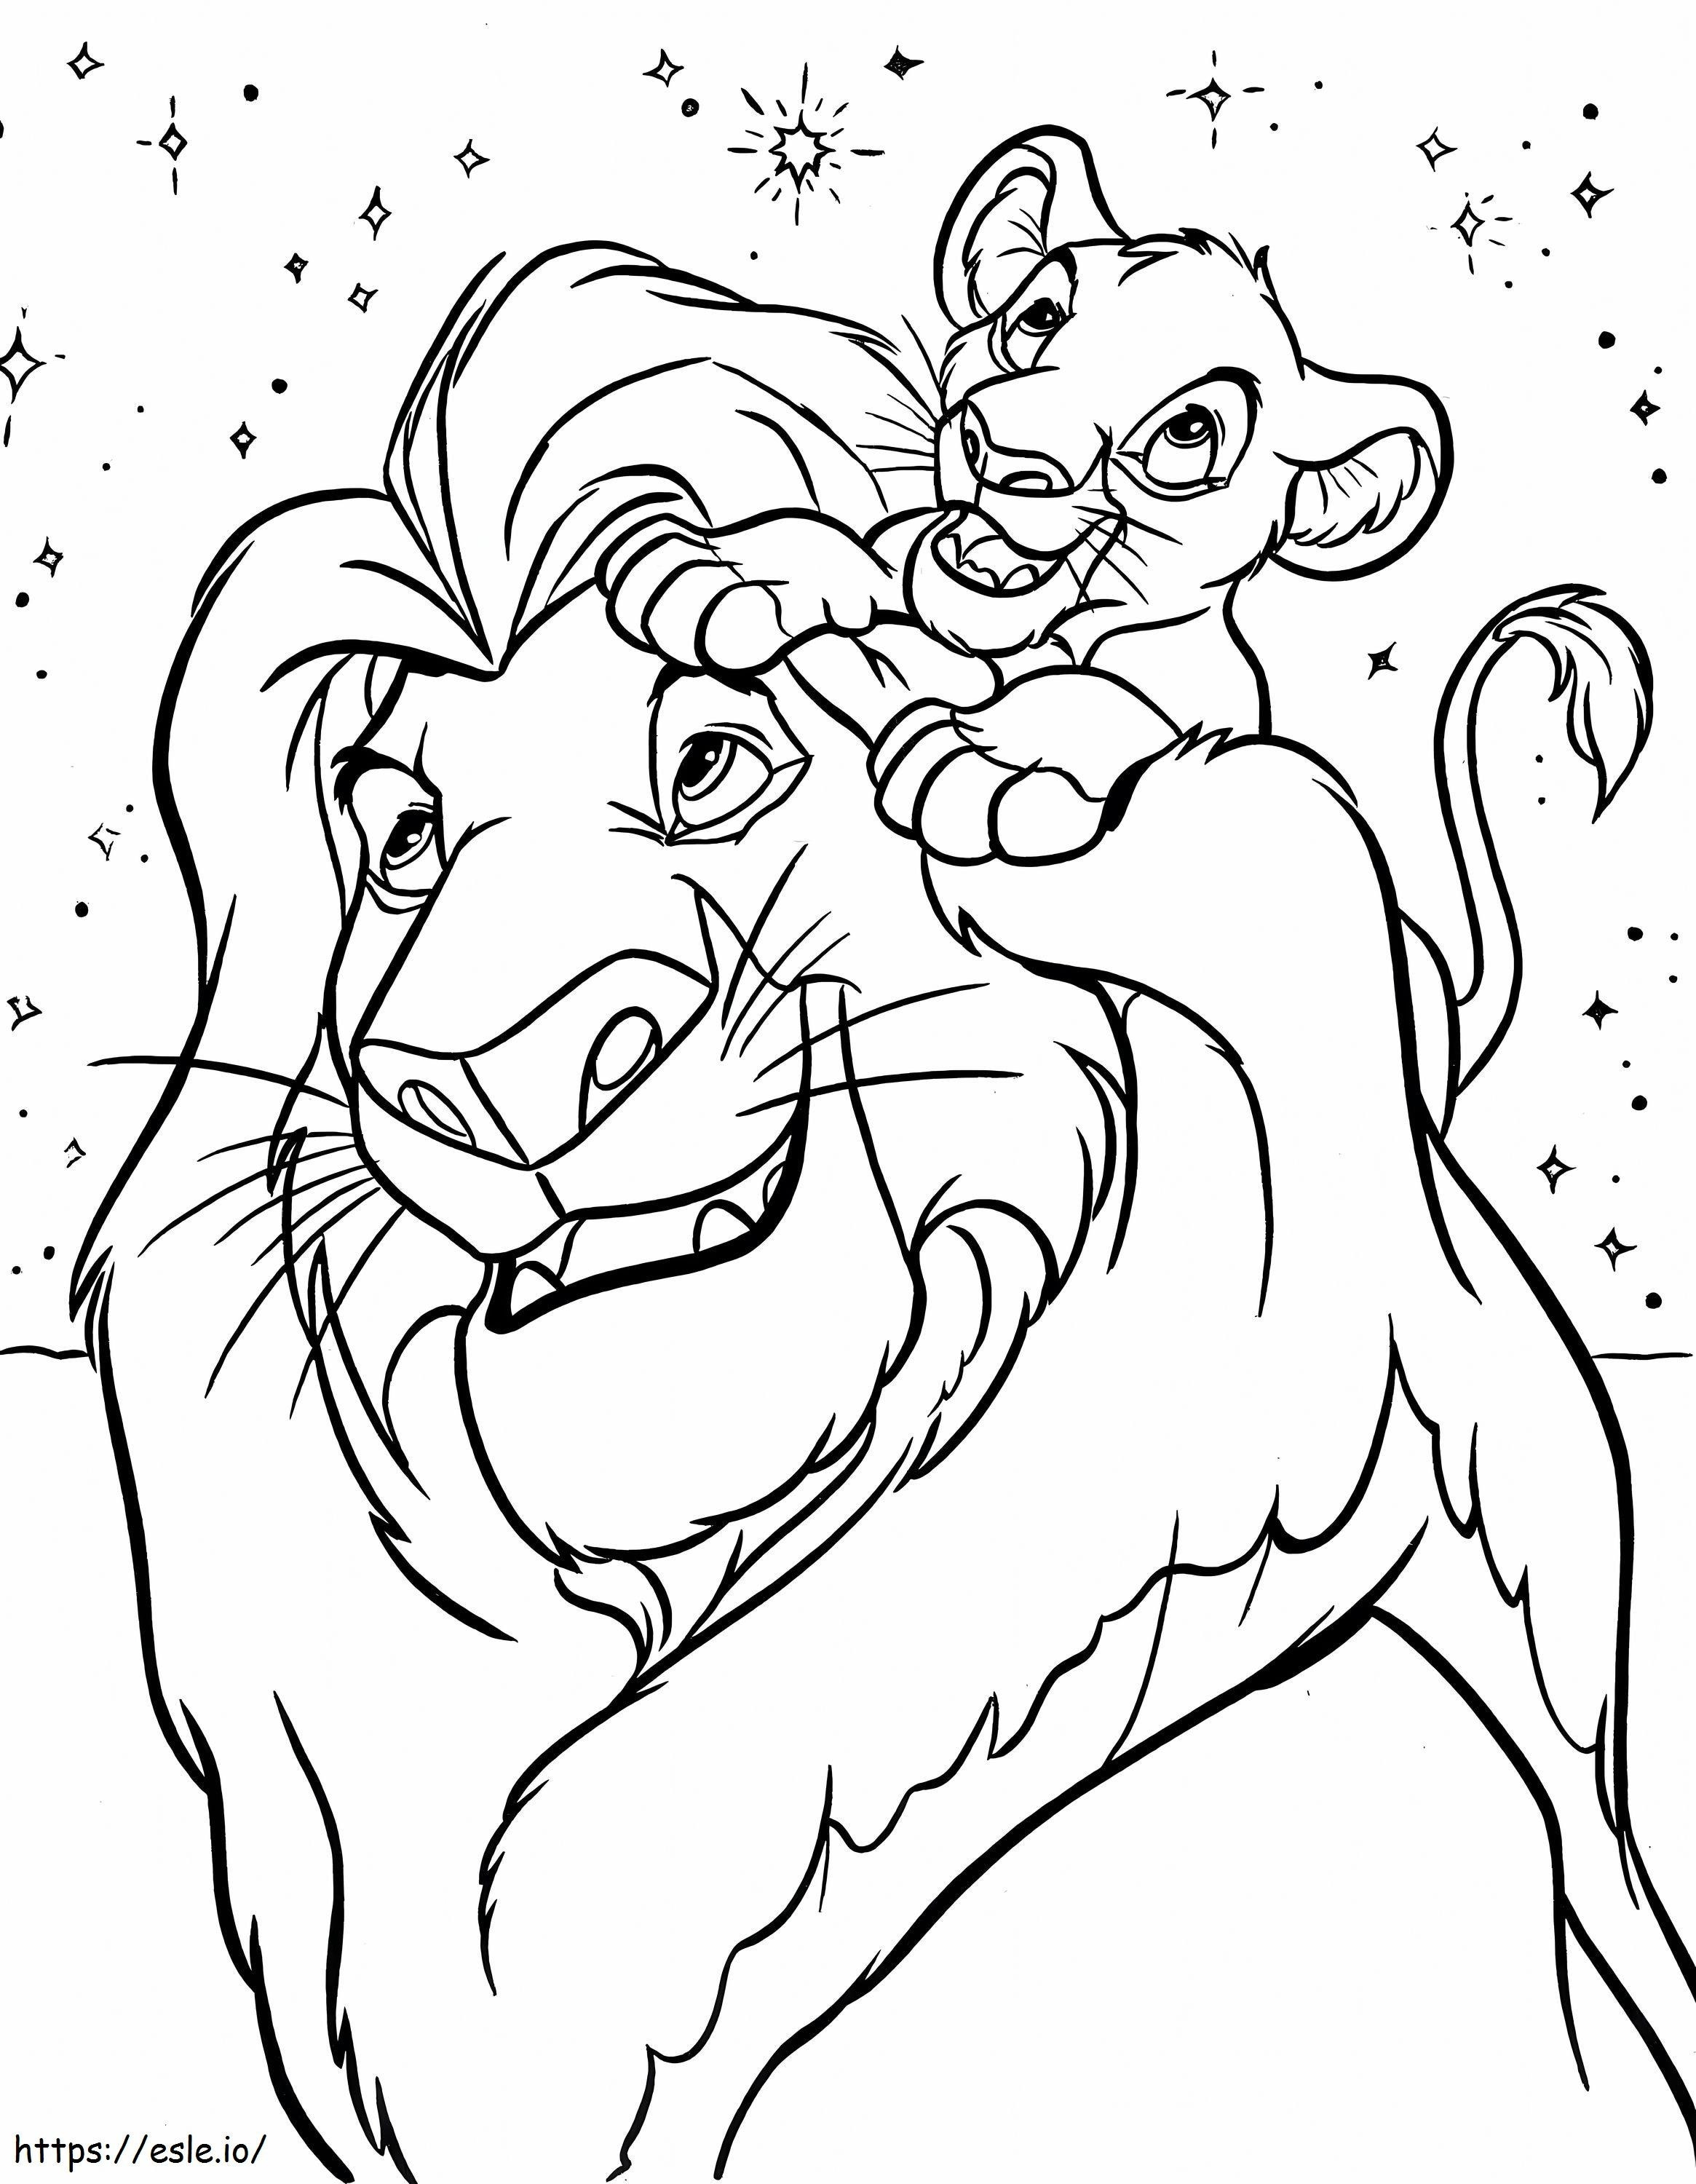 Rei Leão da Disney para colorir